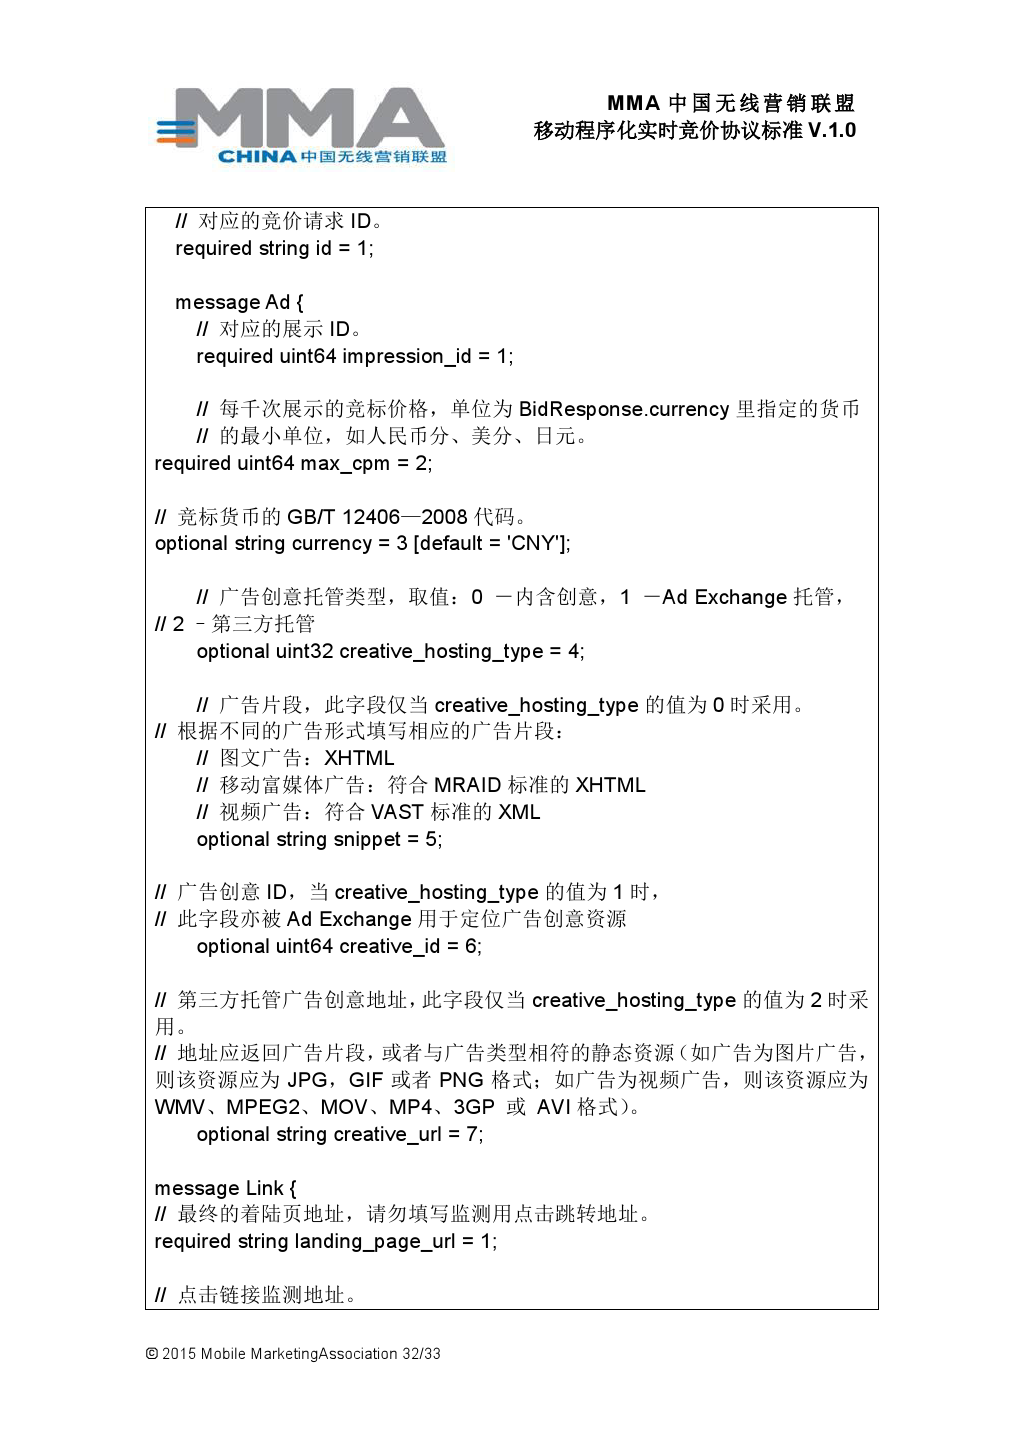 MMA中国无线营销联盟移动程序化实时竞价协议标准V.1.0_000033